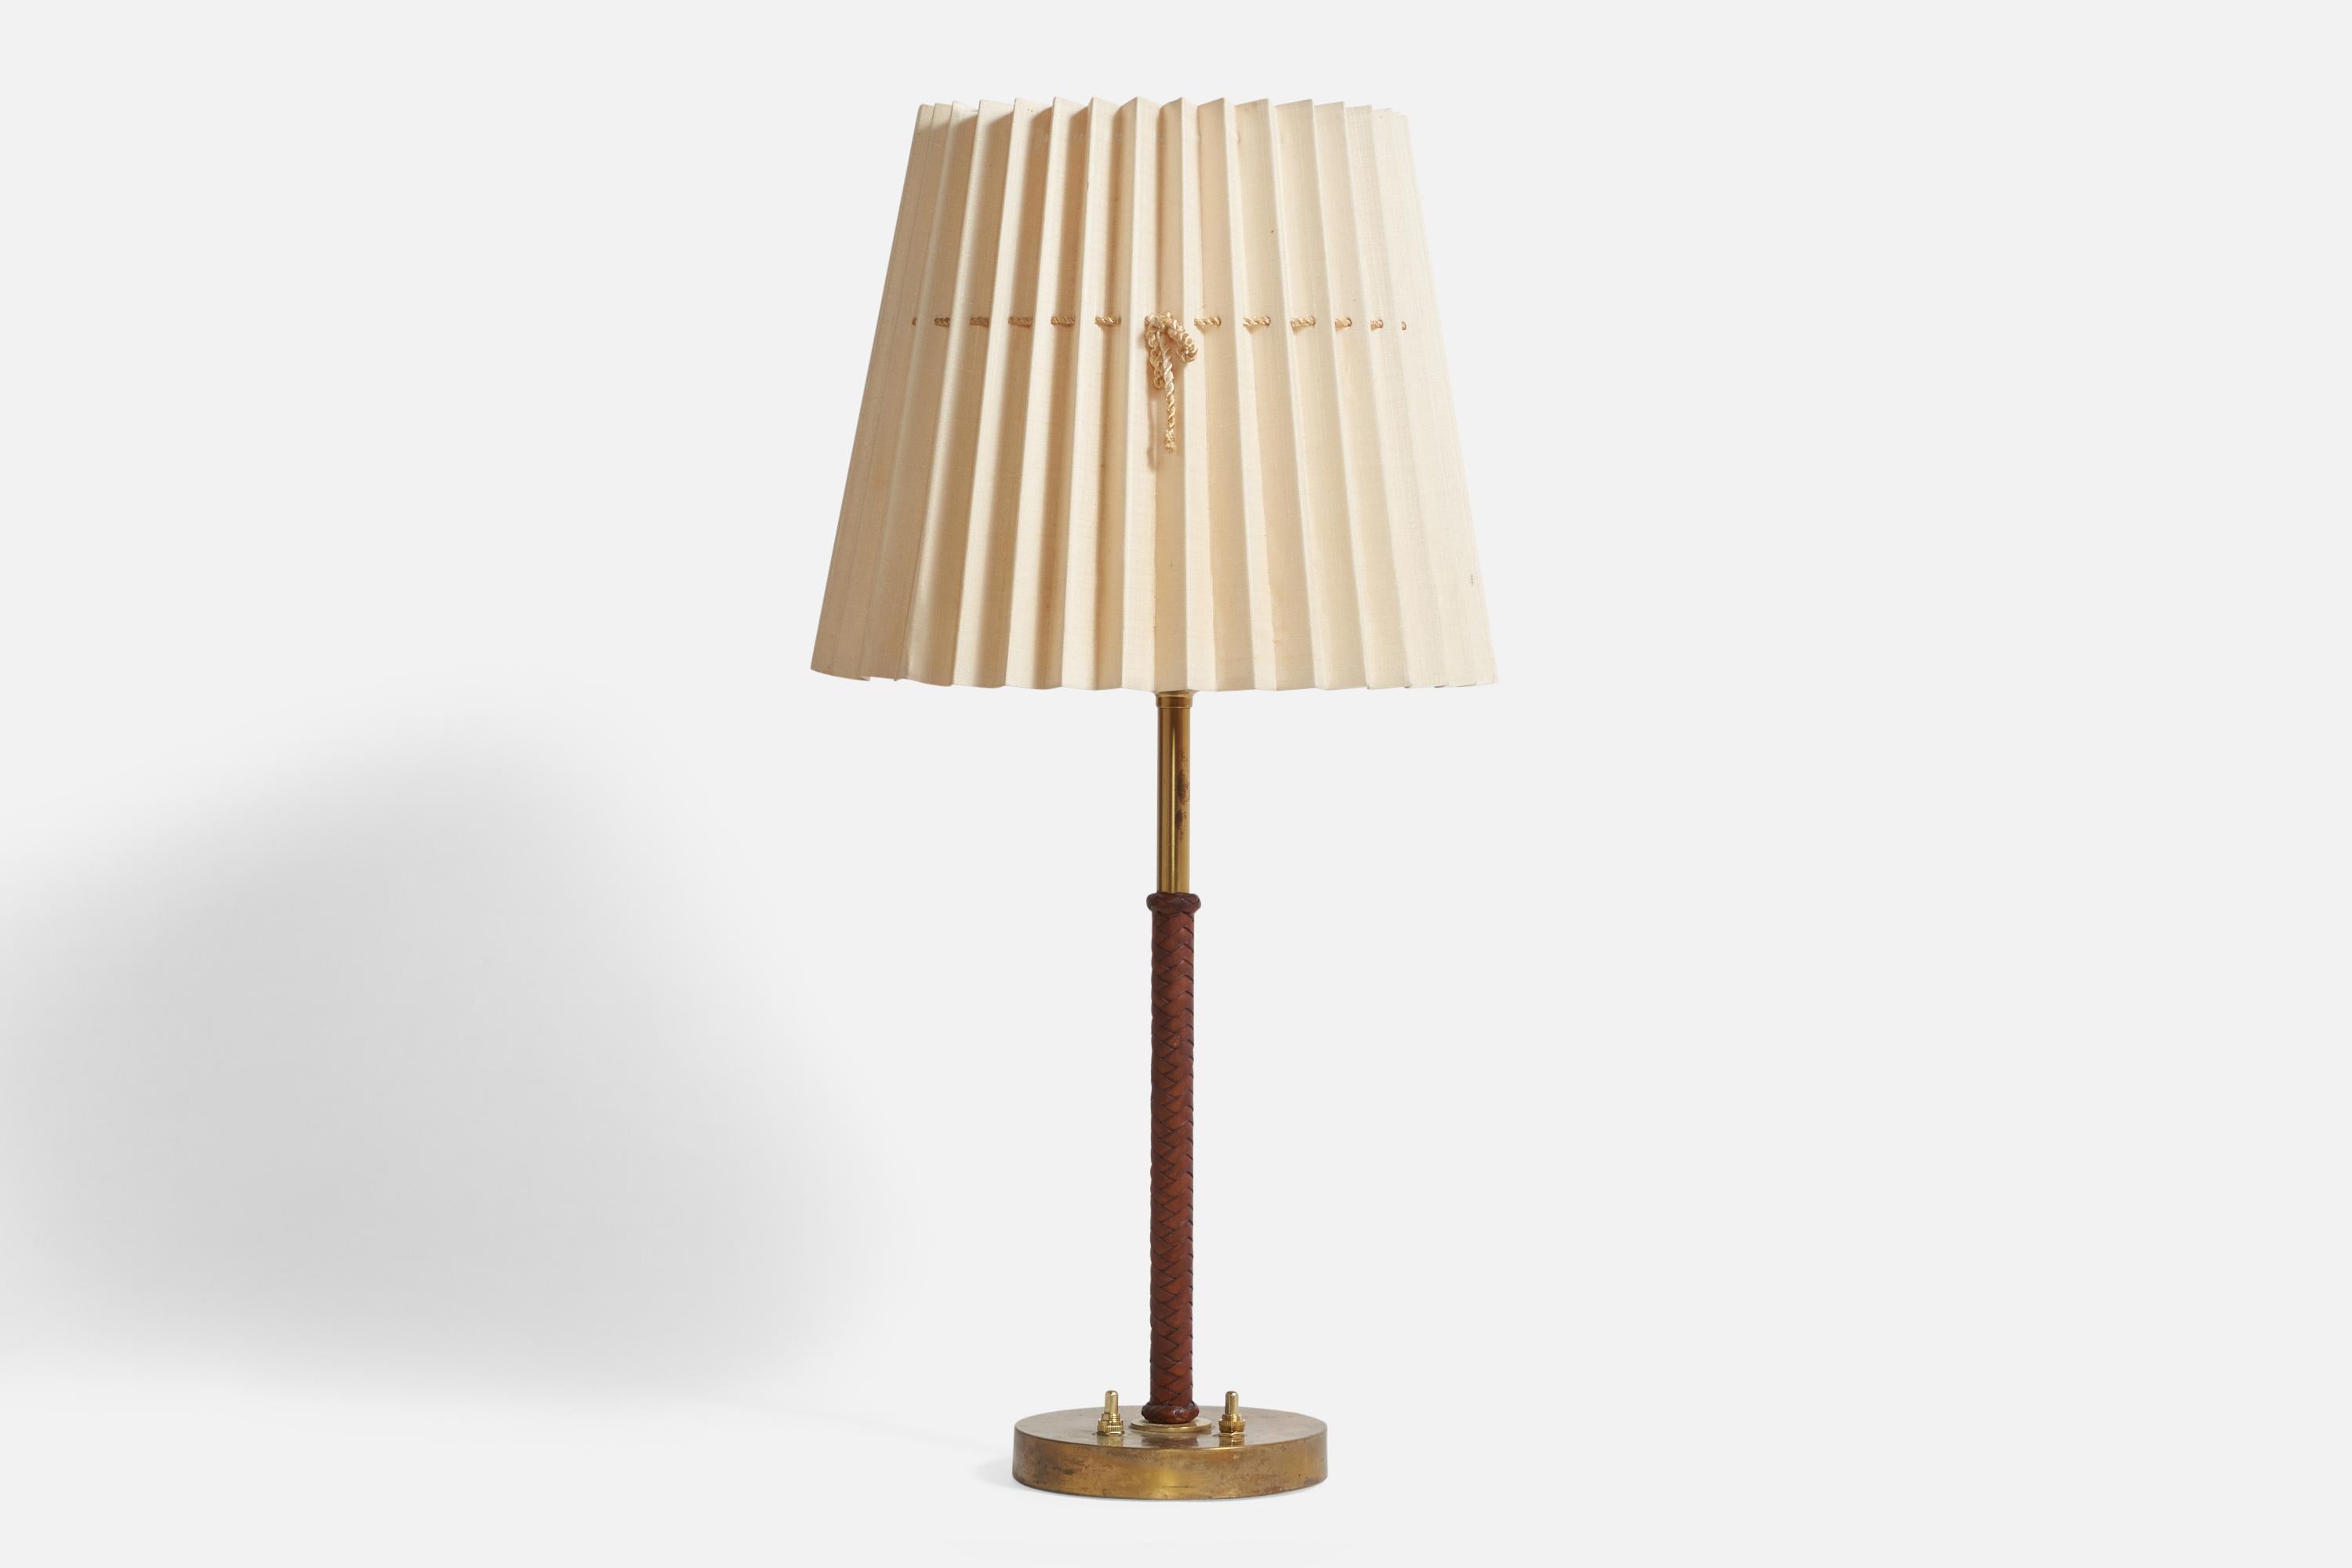 Lampe de table en laiton, cuir brun tressé et papier beige clair, conçue par Bertil Brisborg et produite par Nordiska Kompaniet, Suède, années 1940.

Dimensions globales (pouces) : 25